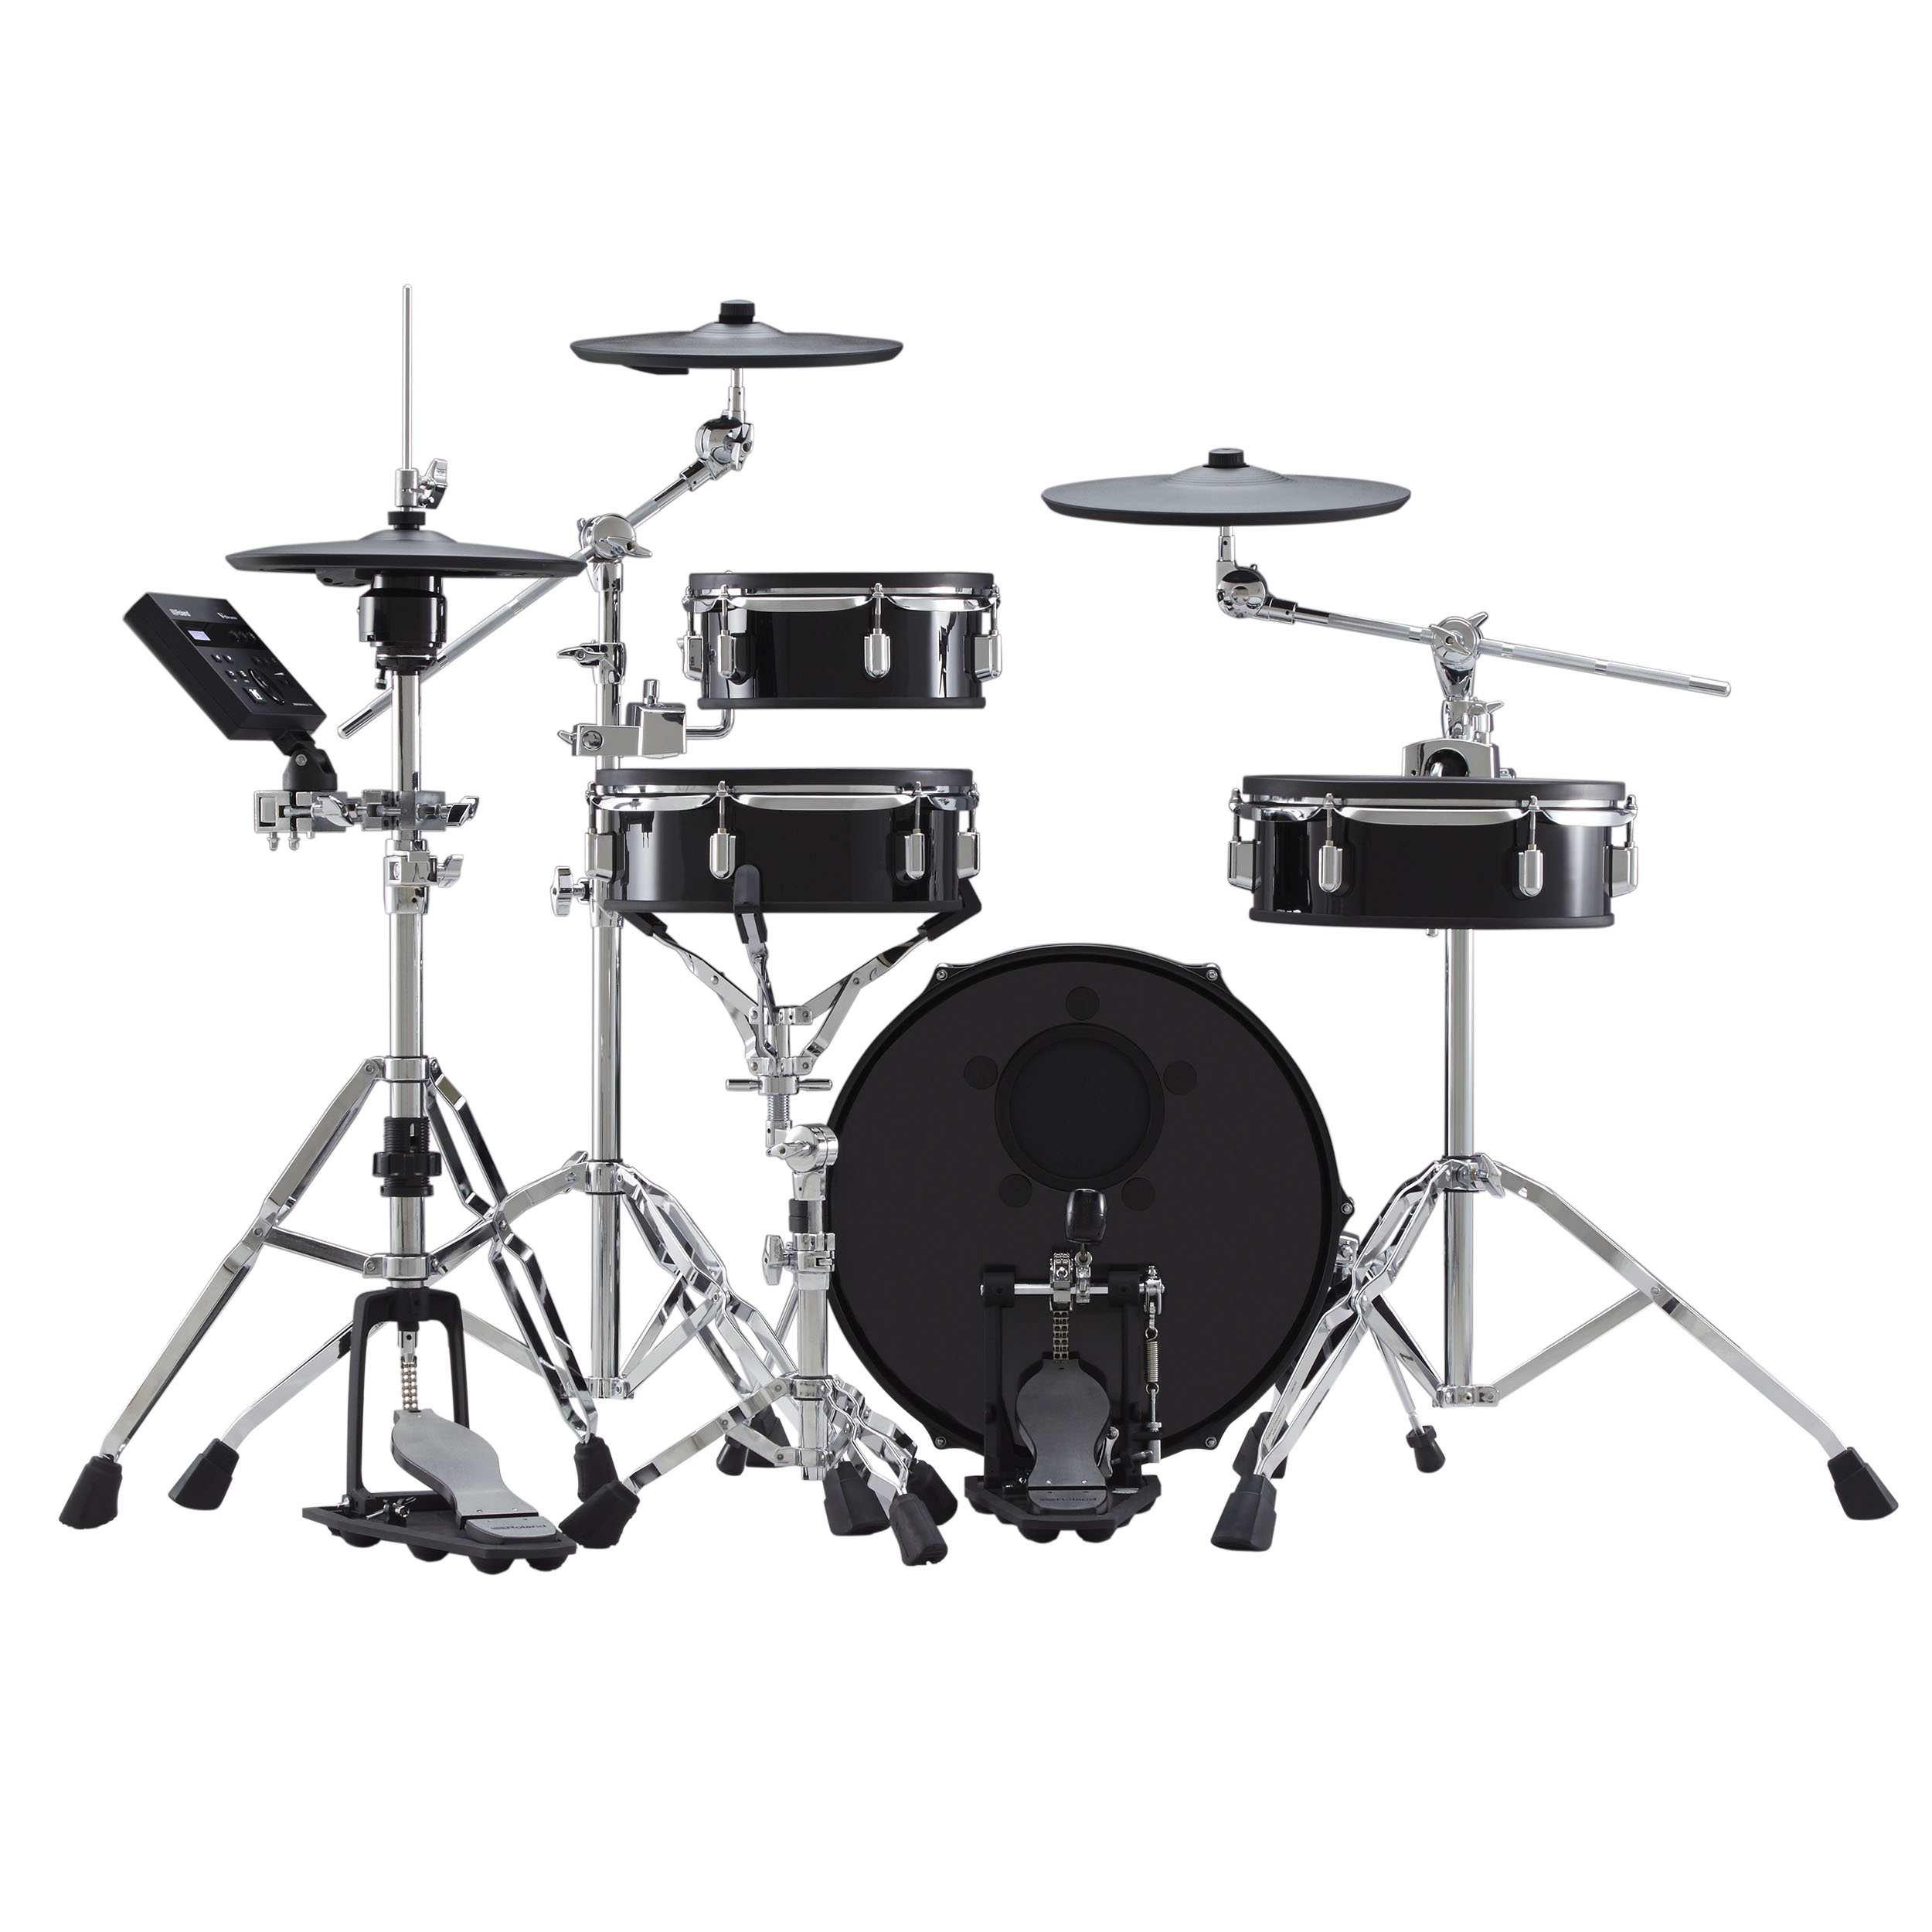 Roland Vad 103 V-drums Acoustic Design 4 Futs - Batería electrónica completa - Variation 1